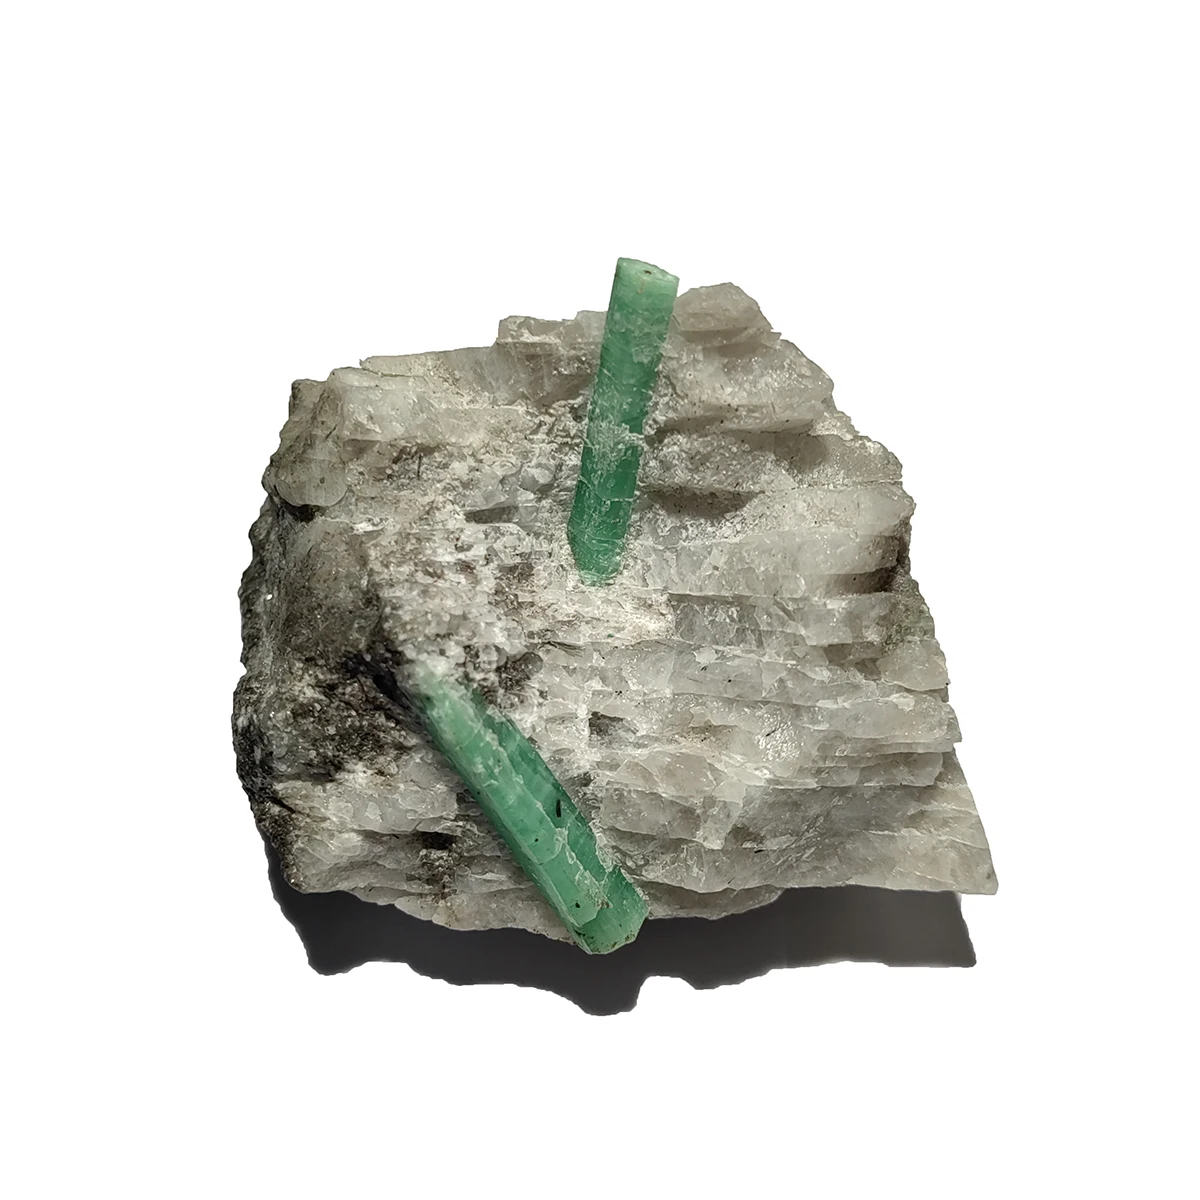 НОВИНКА! C5-6A 1 шт. 100% натуральный зеленый изумруд минеральный драгоценный камень кристалл образцы камни и кристаллы кварц